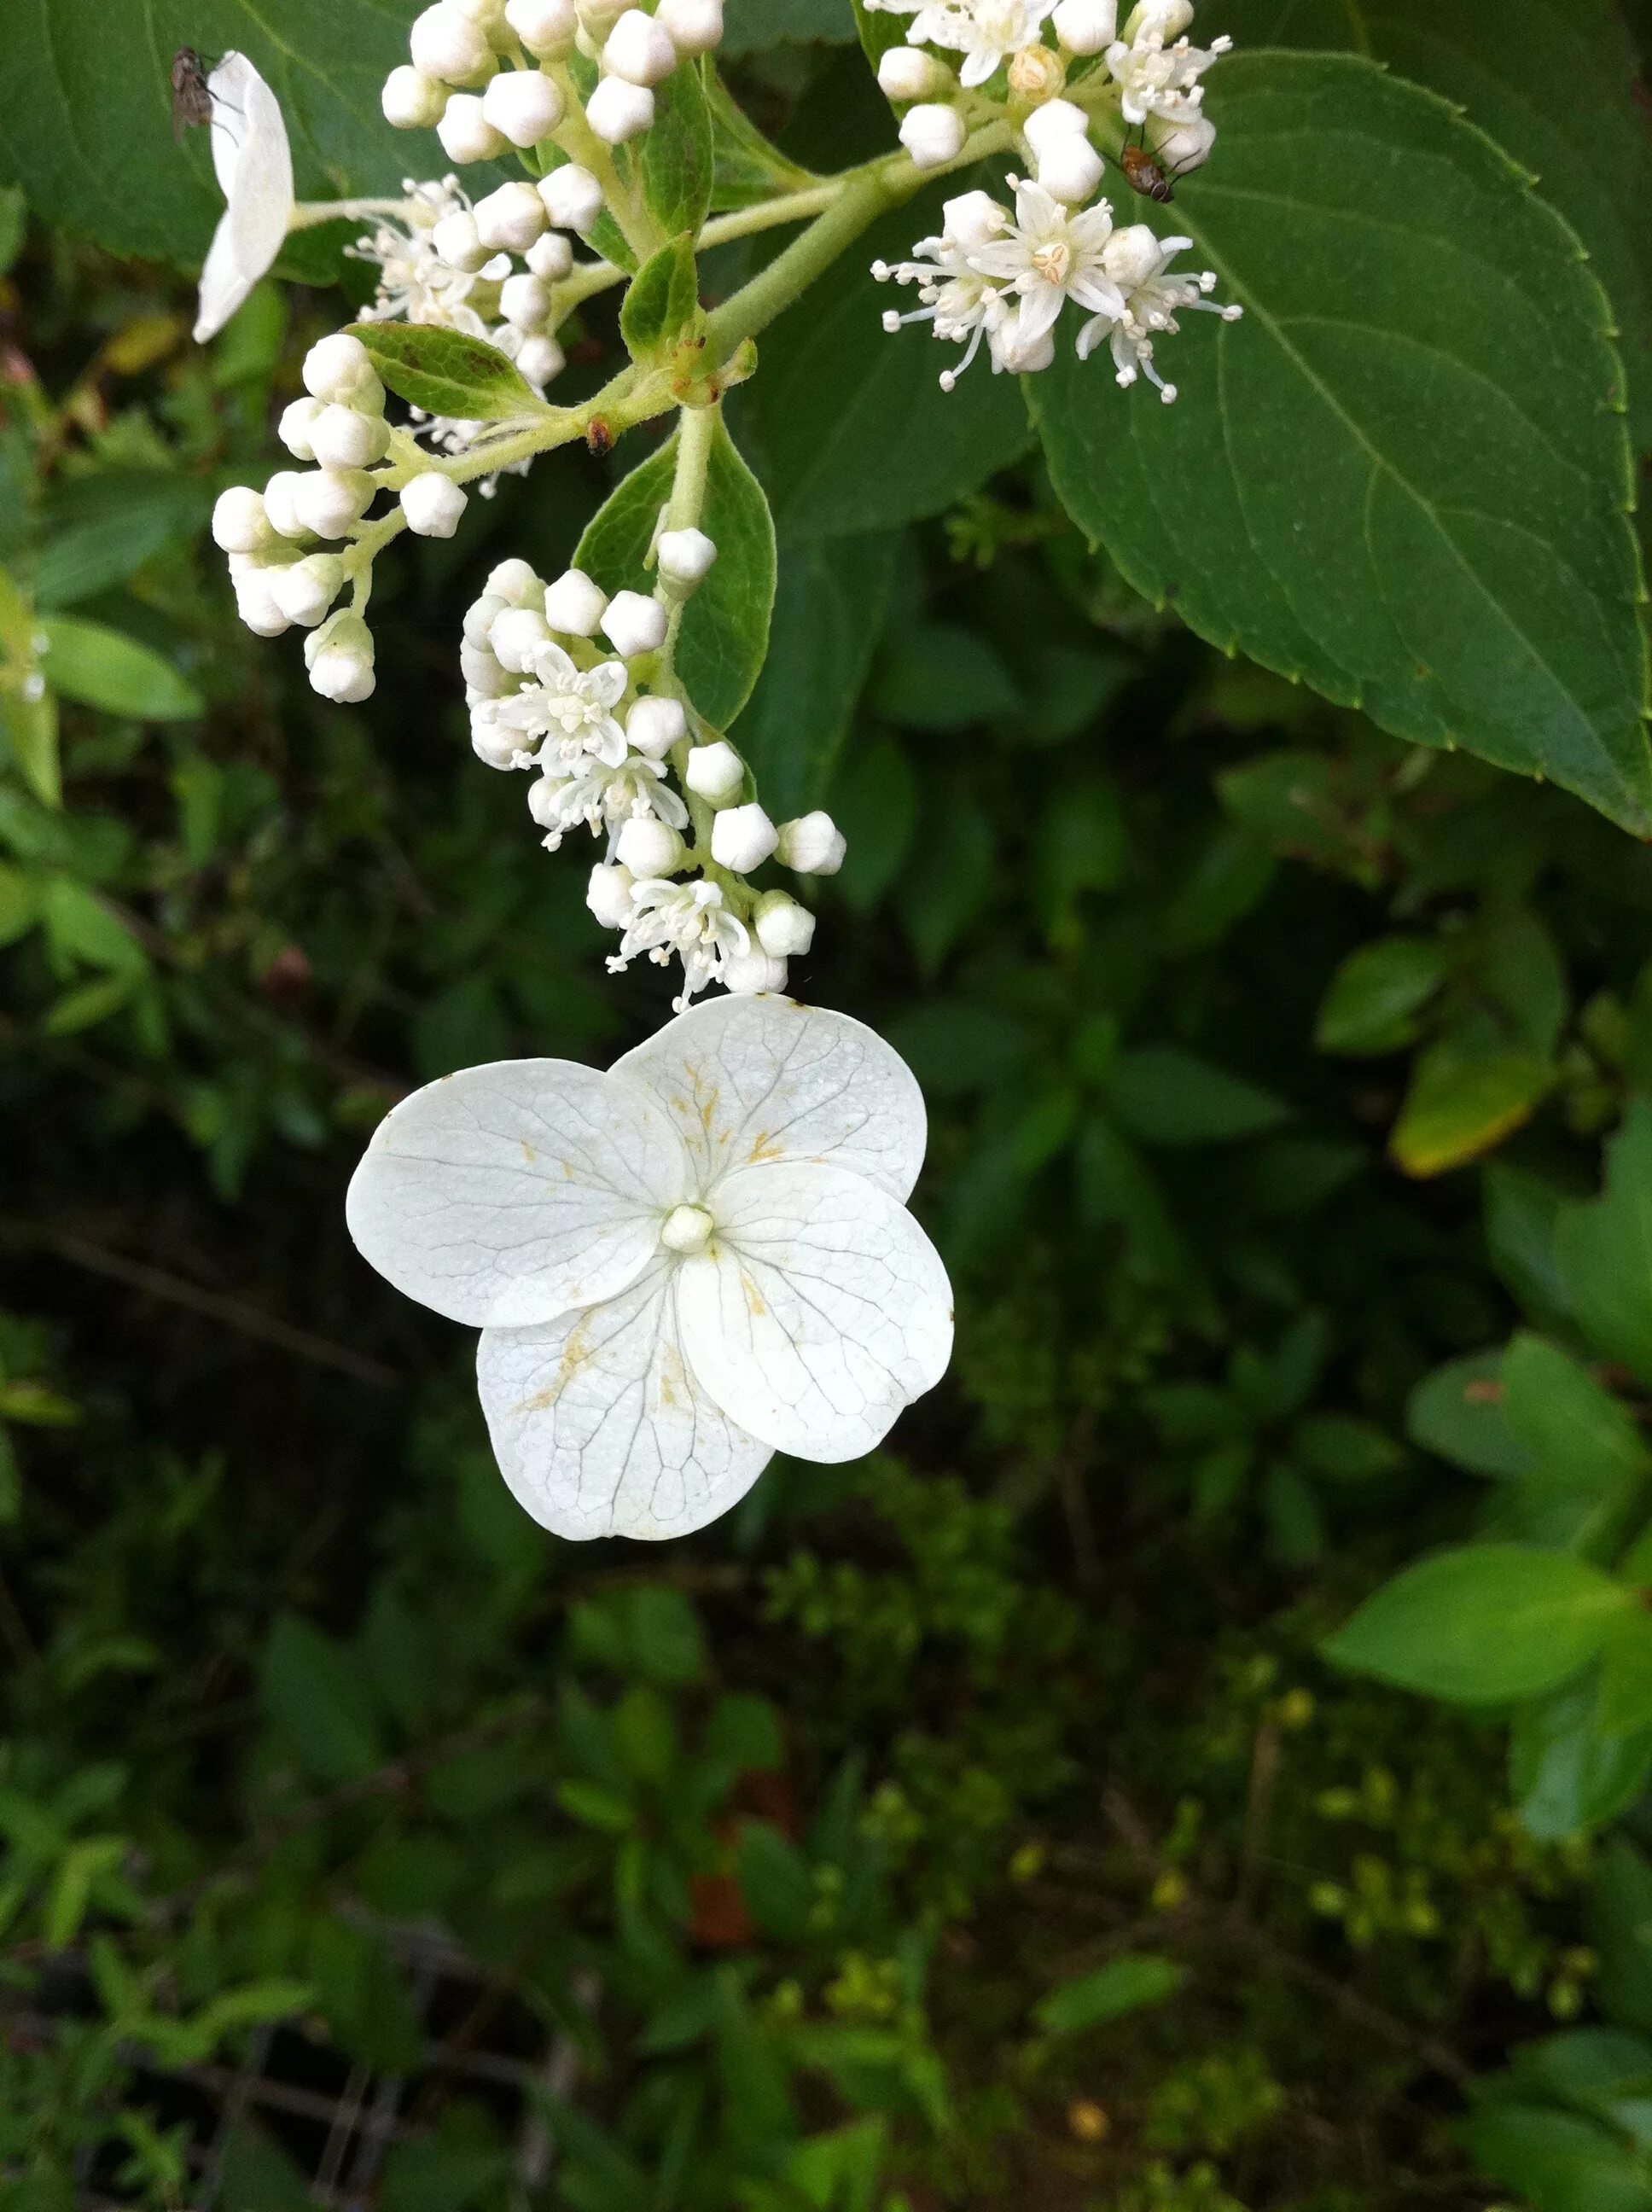 Куст с белыми цветами 4. Растение с белым цветком. Растение с белыми цветами. Растение с белыми цветочками. Кустарник с белыми цветами 4 лепестка.